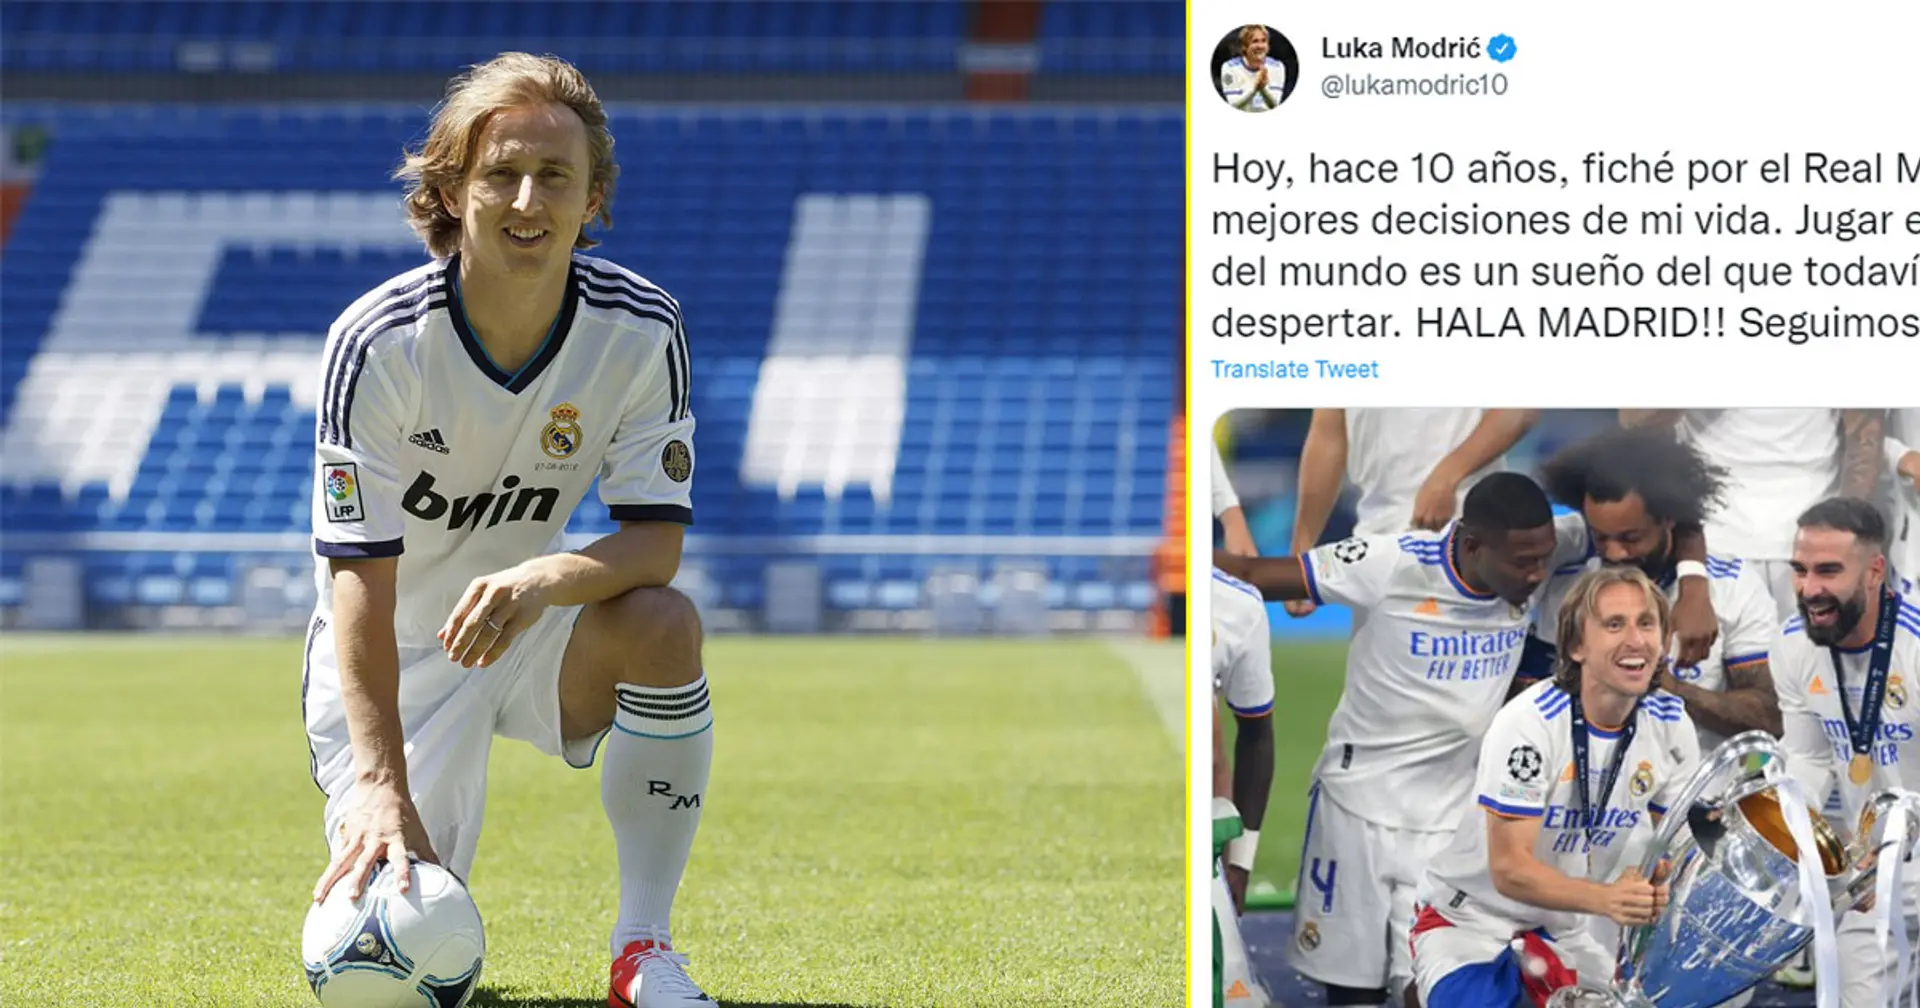 'Un sueño del que no quiero despertar': Modric celebra 10 años en el Real Madrid